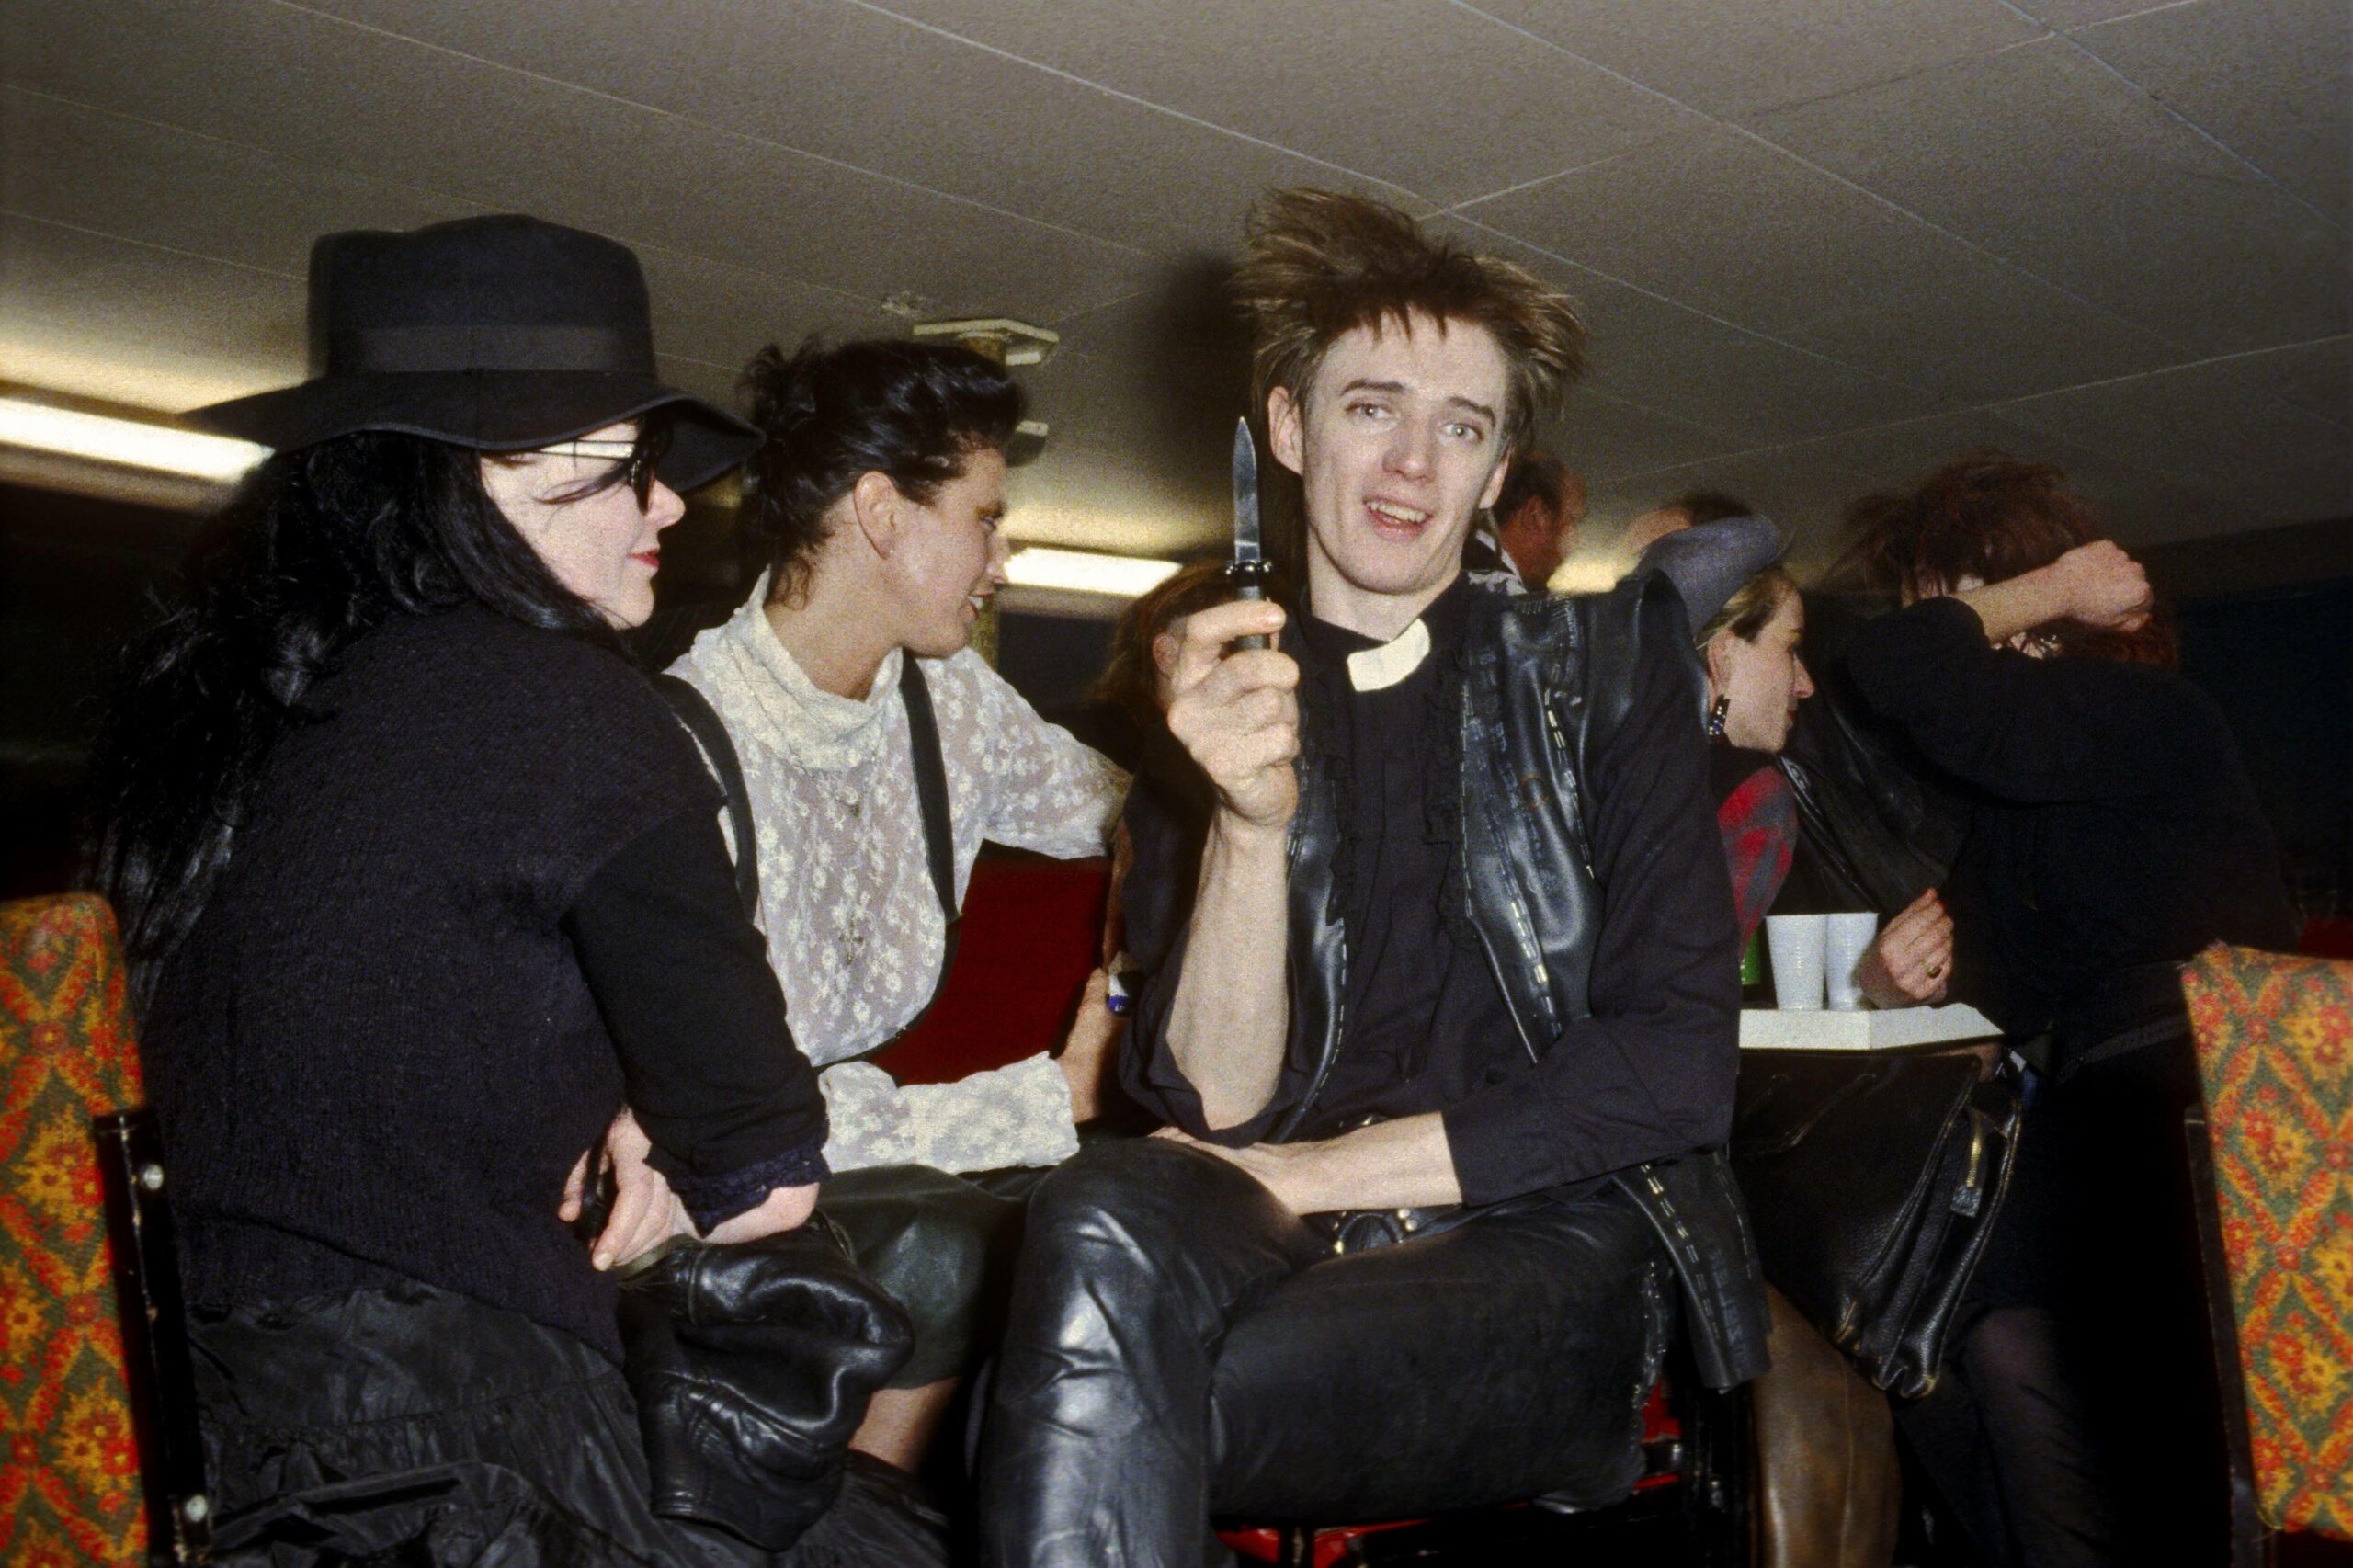 Blixa Bargeld bei einer Party, 1983. Foto: Imago/Ilse Ruppert/Photo12